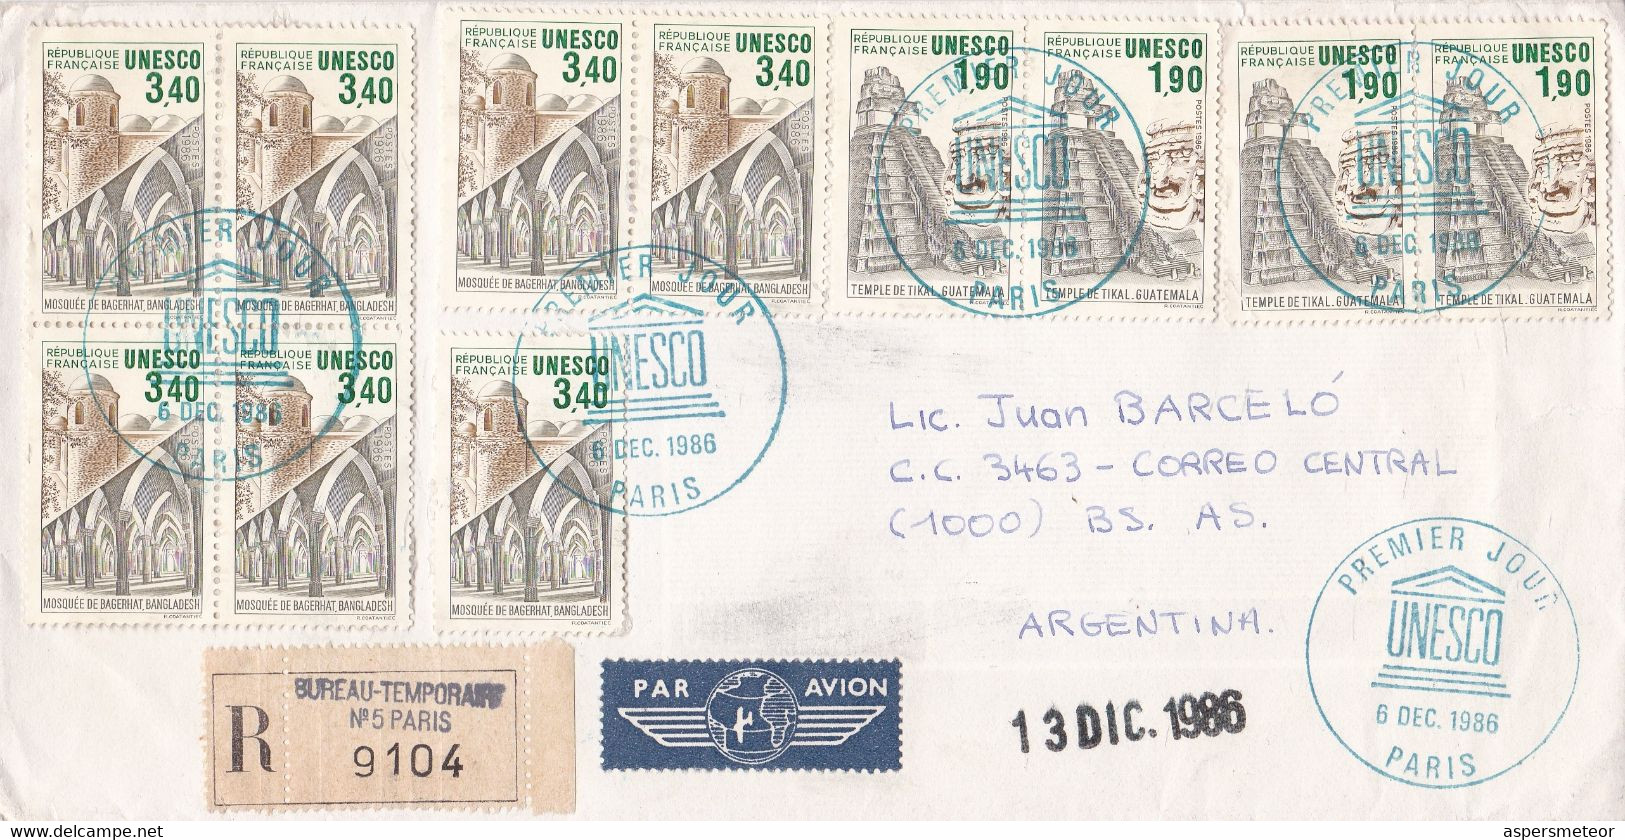 FRANCE. UNESCO, PREMIER JOUR. CIRCULEE BUREAU-TEMPORAIR A BUENOS AIRES, ARGENTINE. 1986. RECOMMANDE, PAR AVION -LILHU - 1980-1989